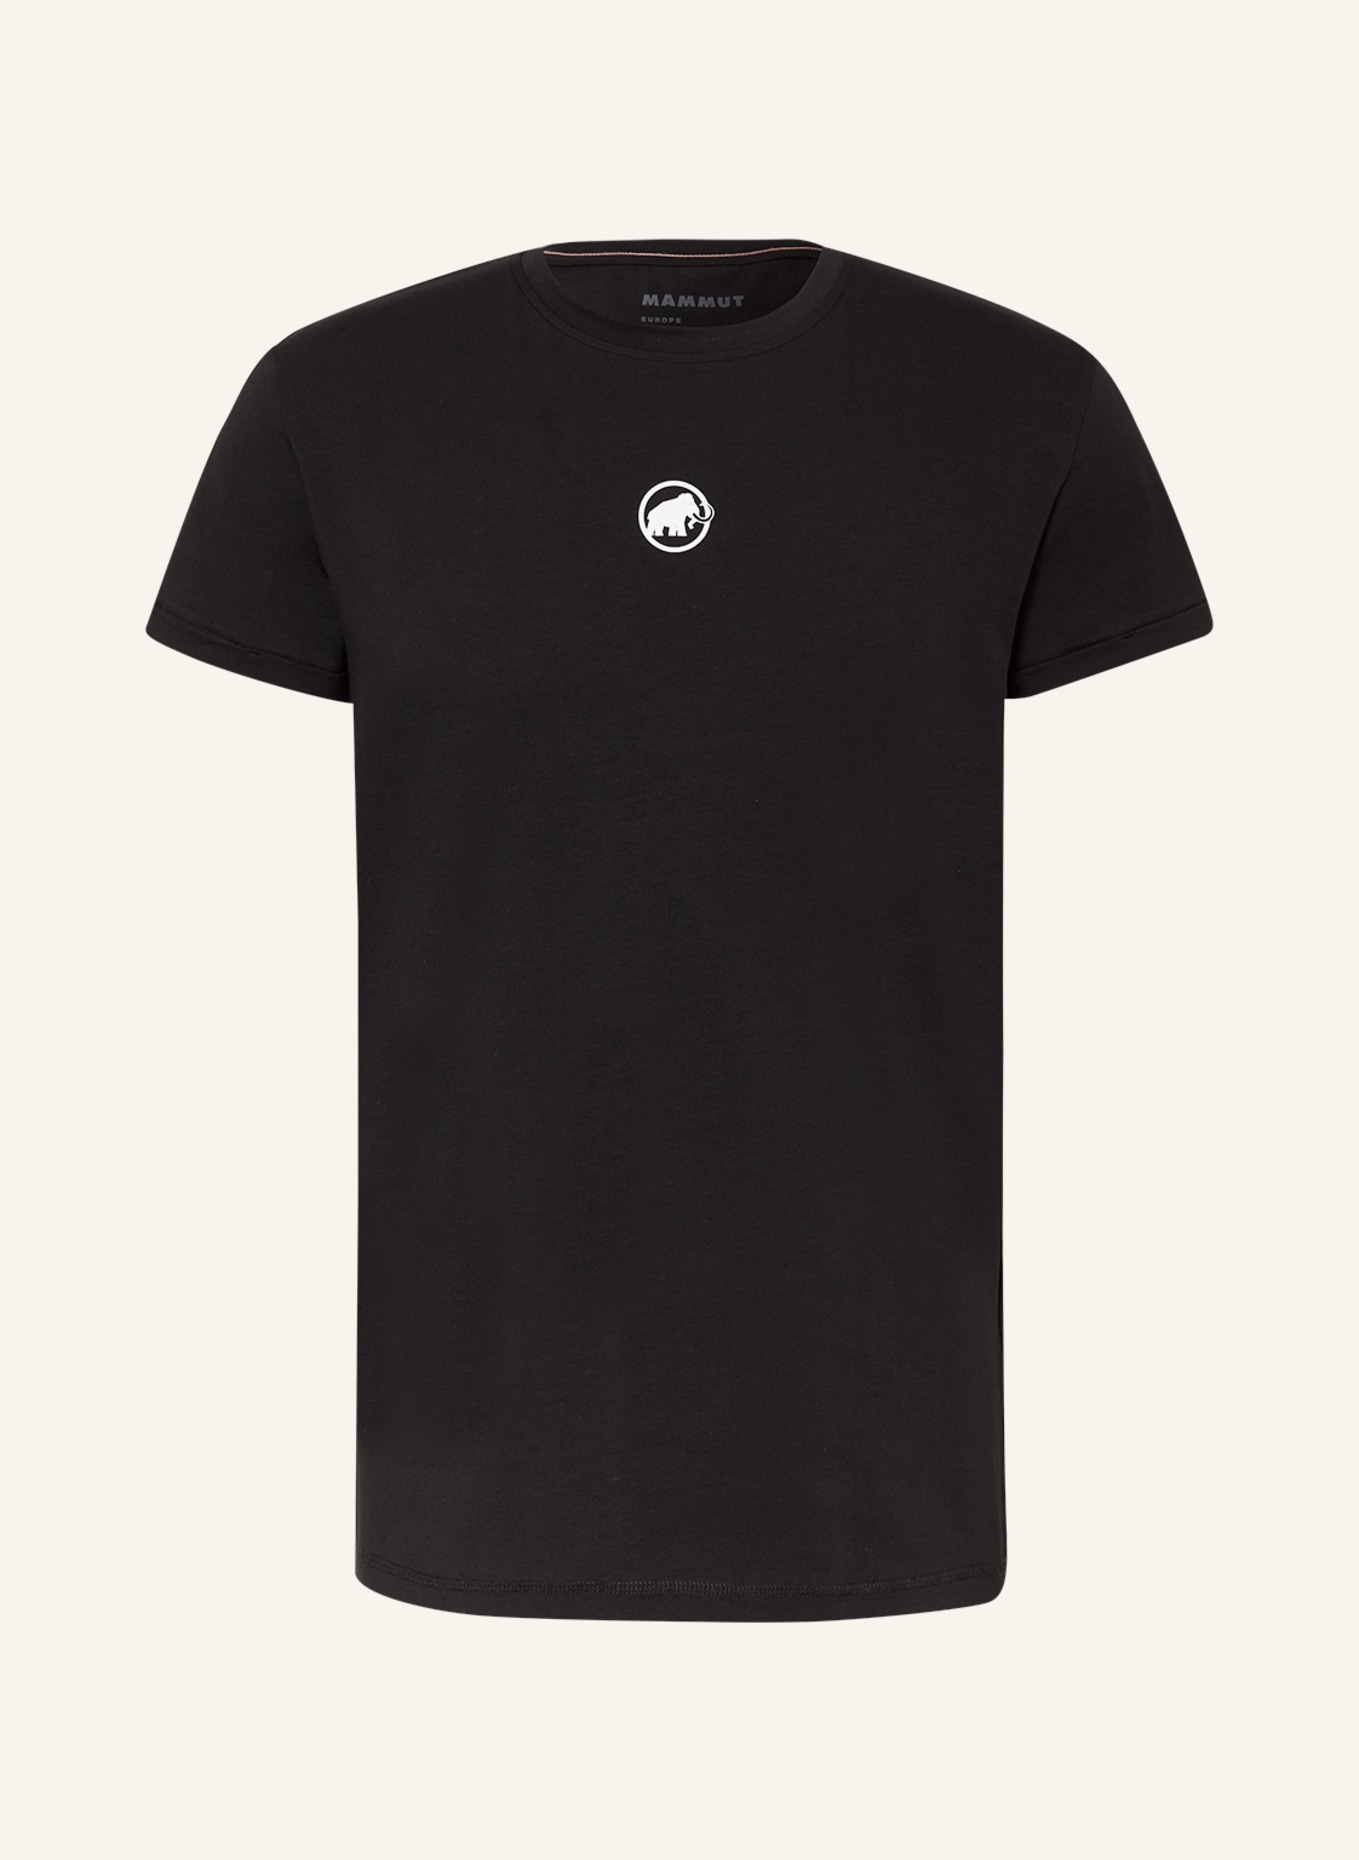 MAMMUT T-Shirt SEON, Farbe: SCHWARZ (Bild 1)